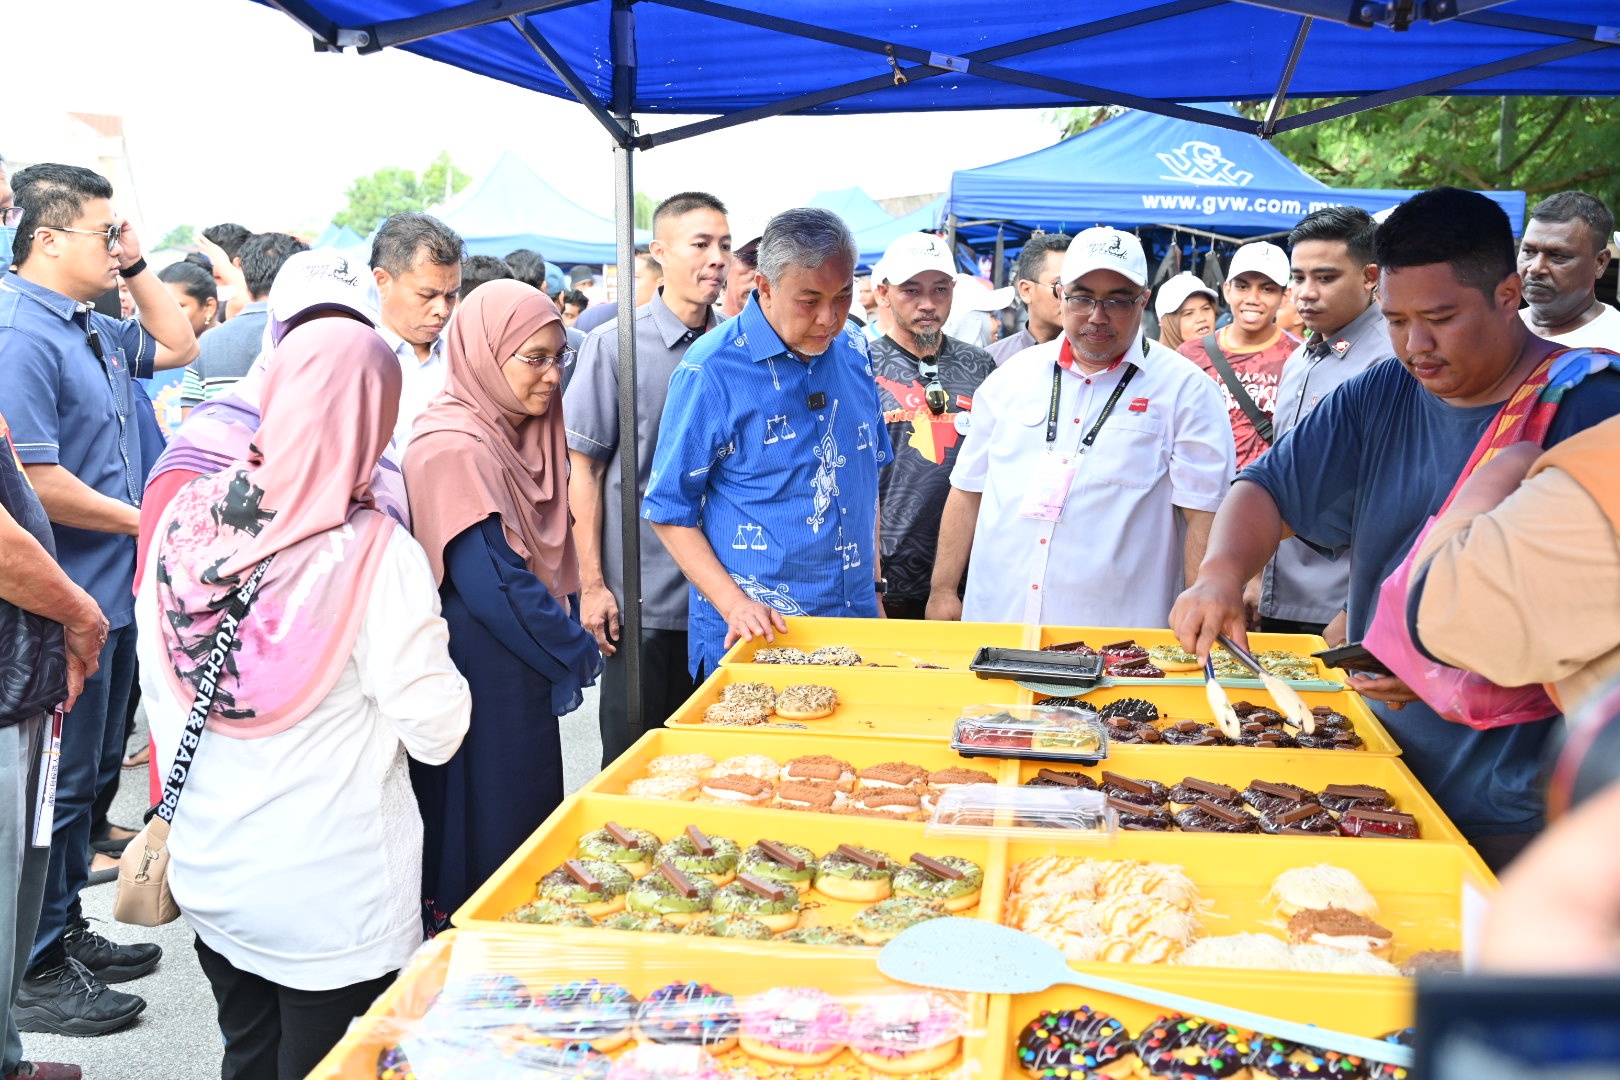 IJOK, 6 Ogos -- Timbalan Perdana Menteri Datuk Seri Dr Ahmad Zahid Hamidi merangkap Pengerusi Barisan Nasional (BN) bersama calon Pakatan Harapan (PH) bagi Dewan Undangan Negeri (DUN) N.11 Ijok Amidi Abdul Manan menyantuni peniaga pasar petang ketika berkempen sempena Pilihan Raya Negeri ke-15 (PRN15) Selangor di Pekan Ijok hari ini.